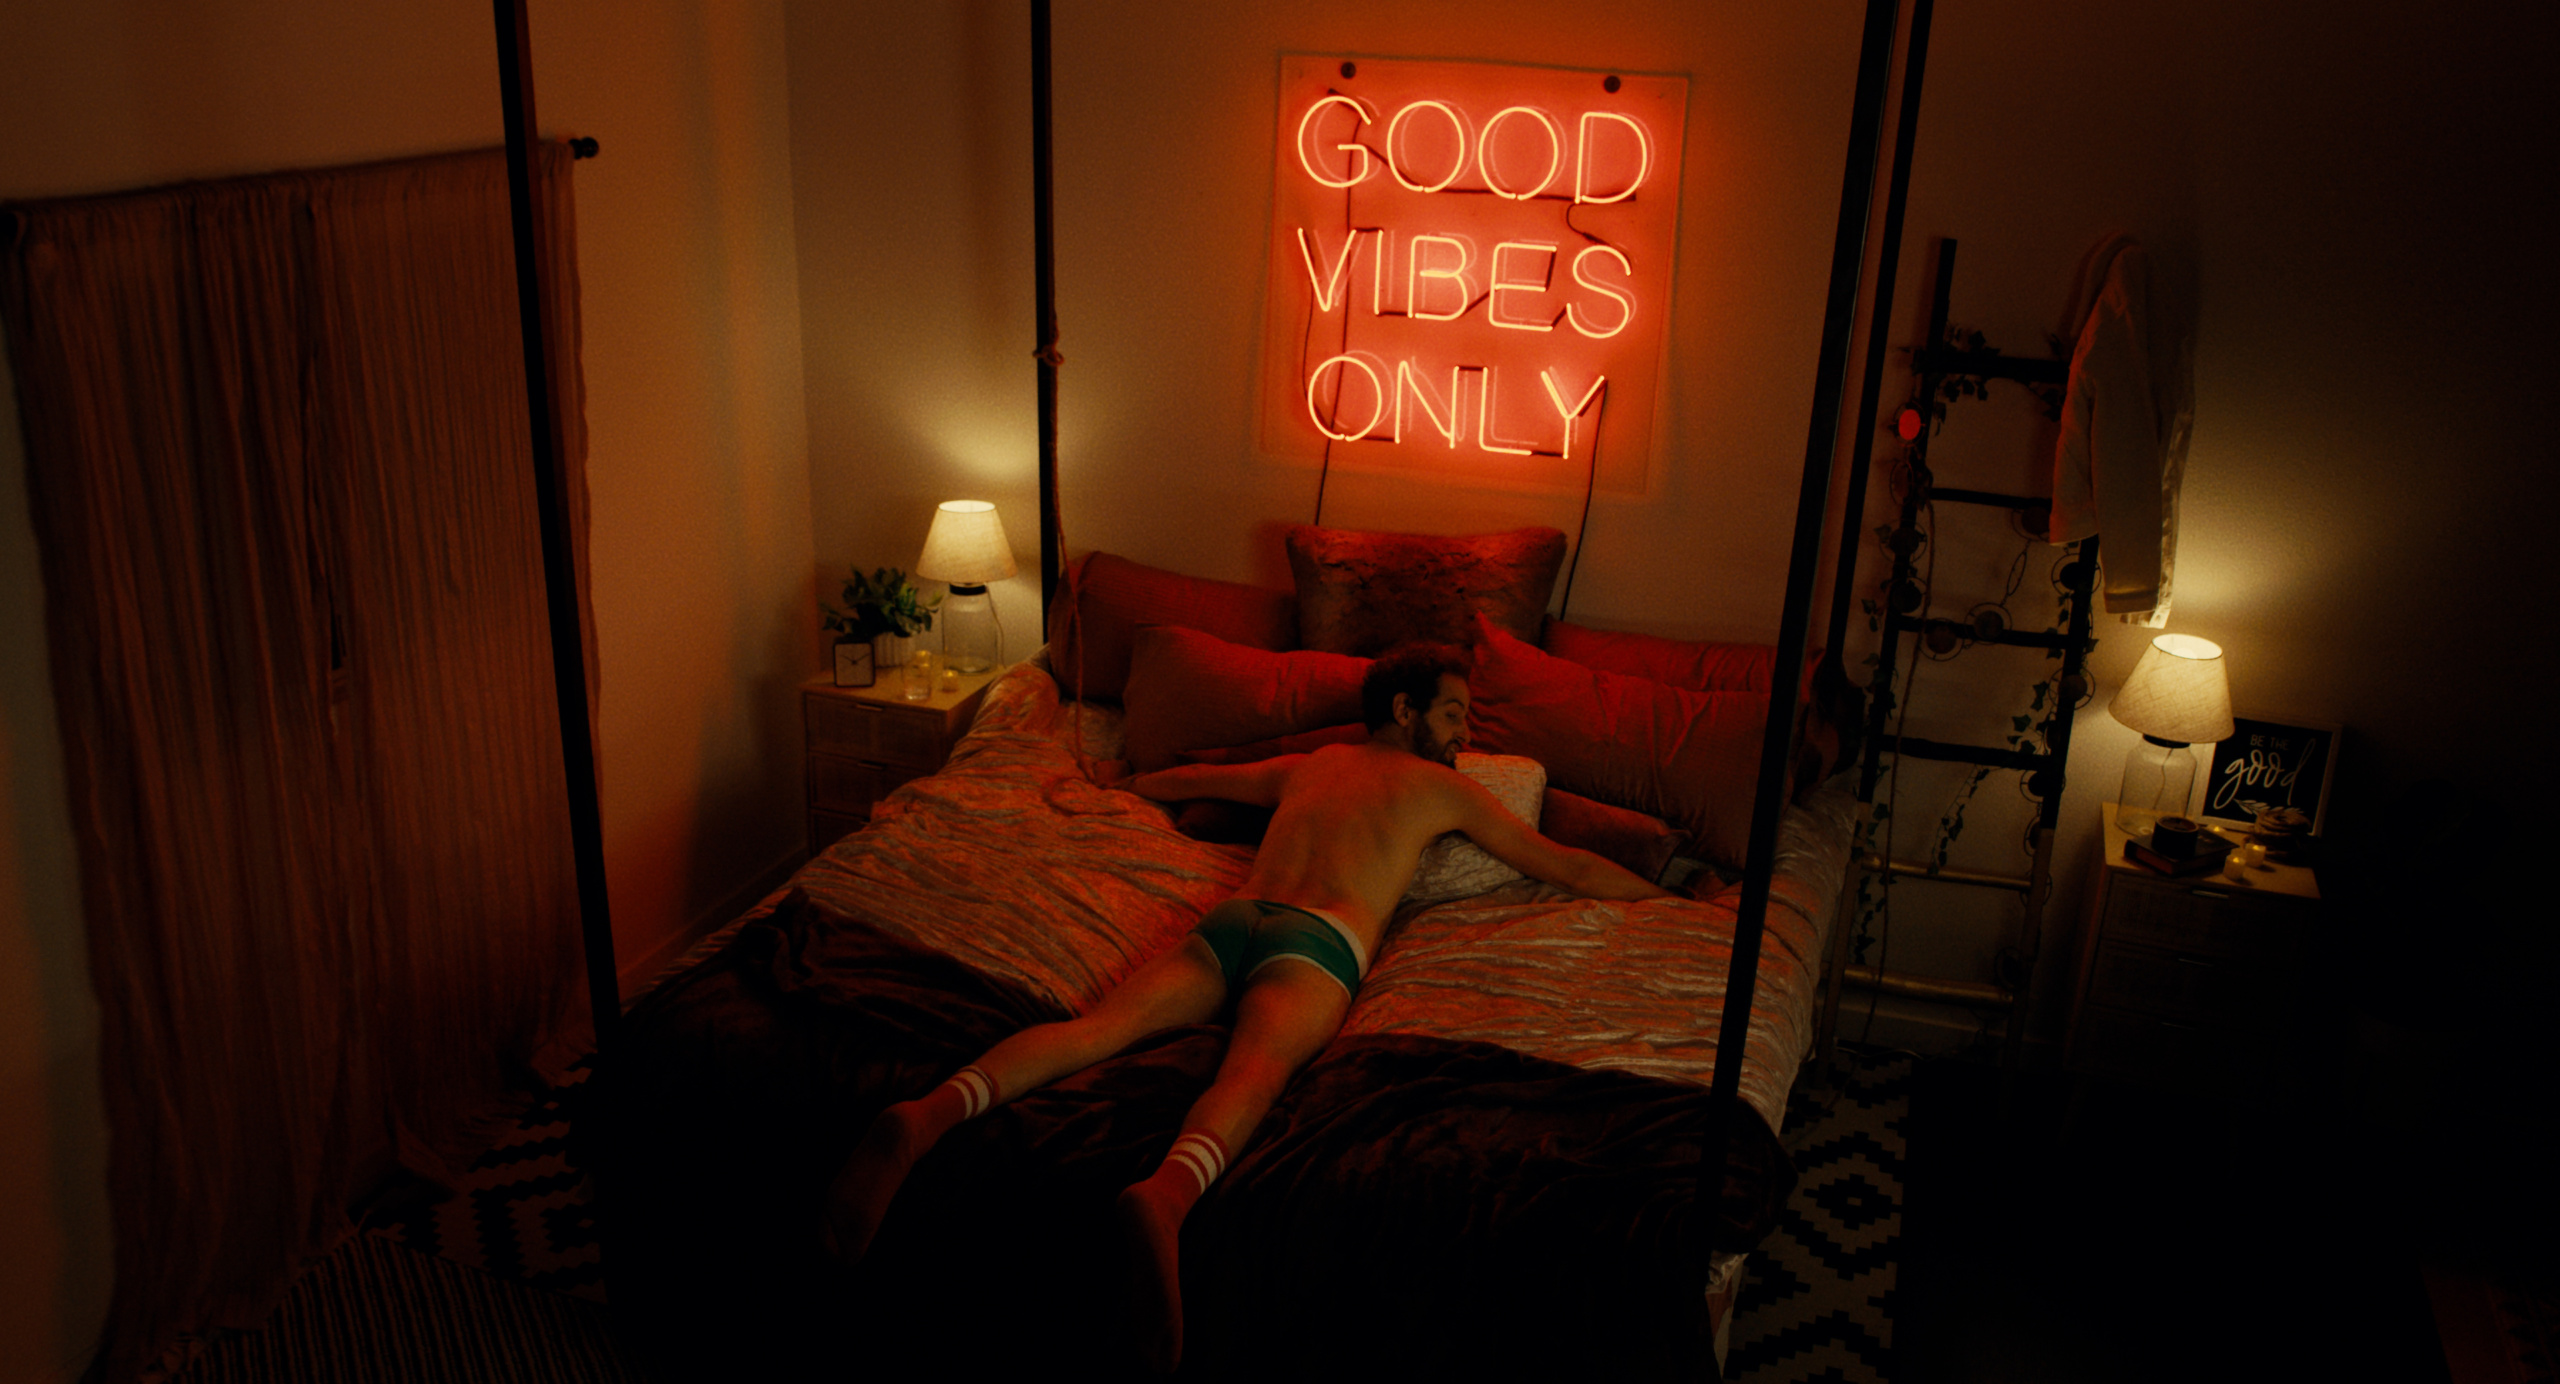 Mann liegt in Unterwäsche auf dem Bett. Über sich Neon-Buchstaben: Good vibes only.